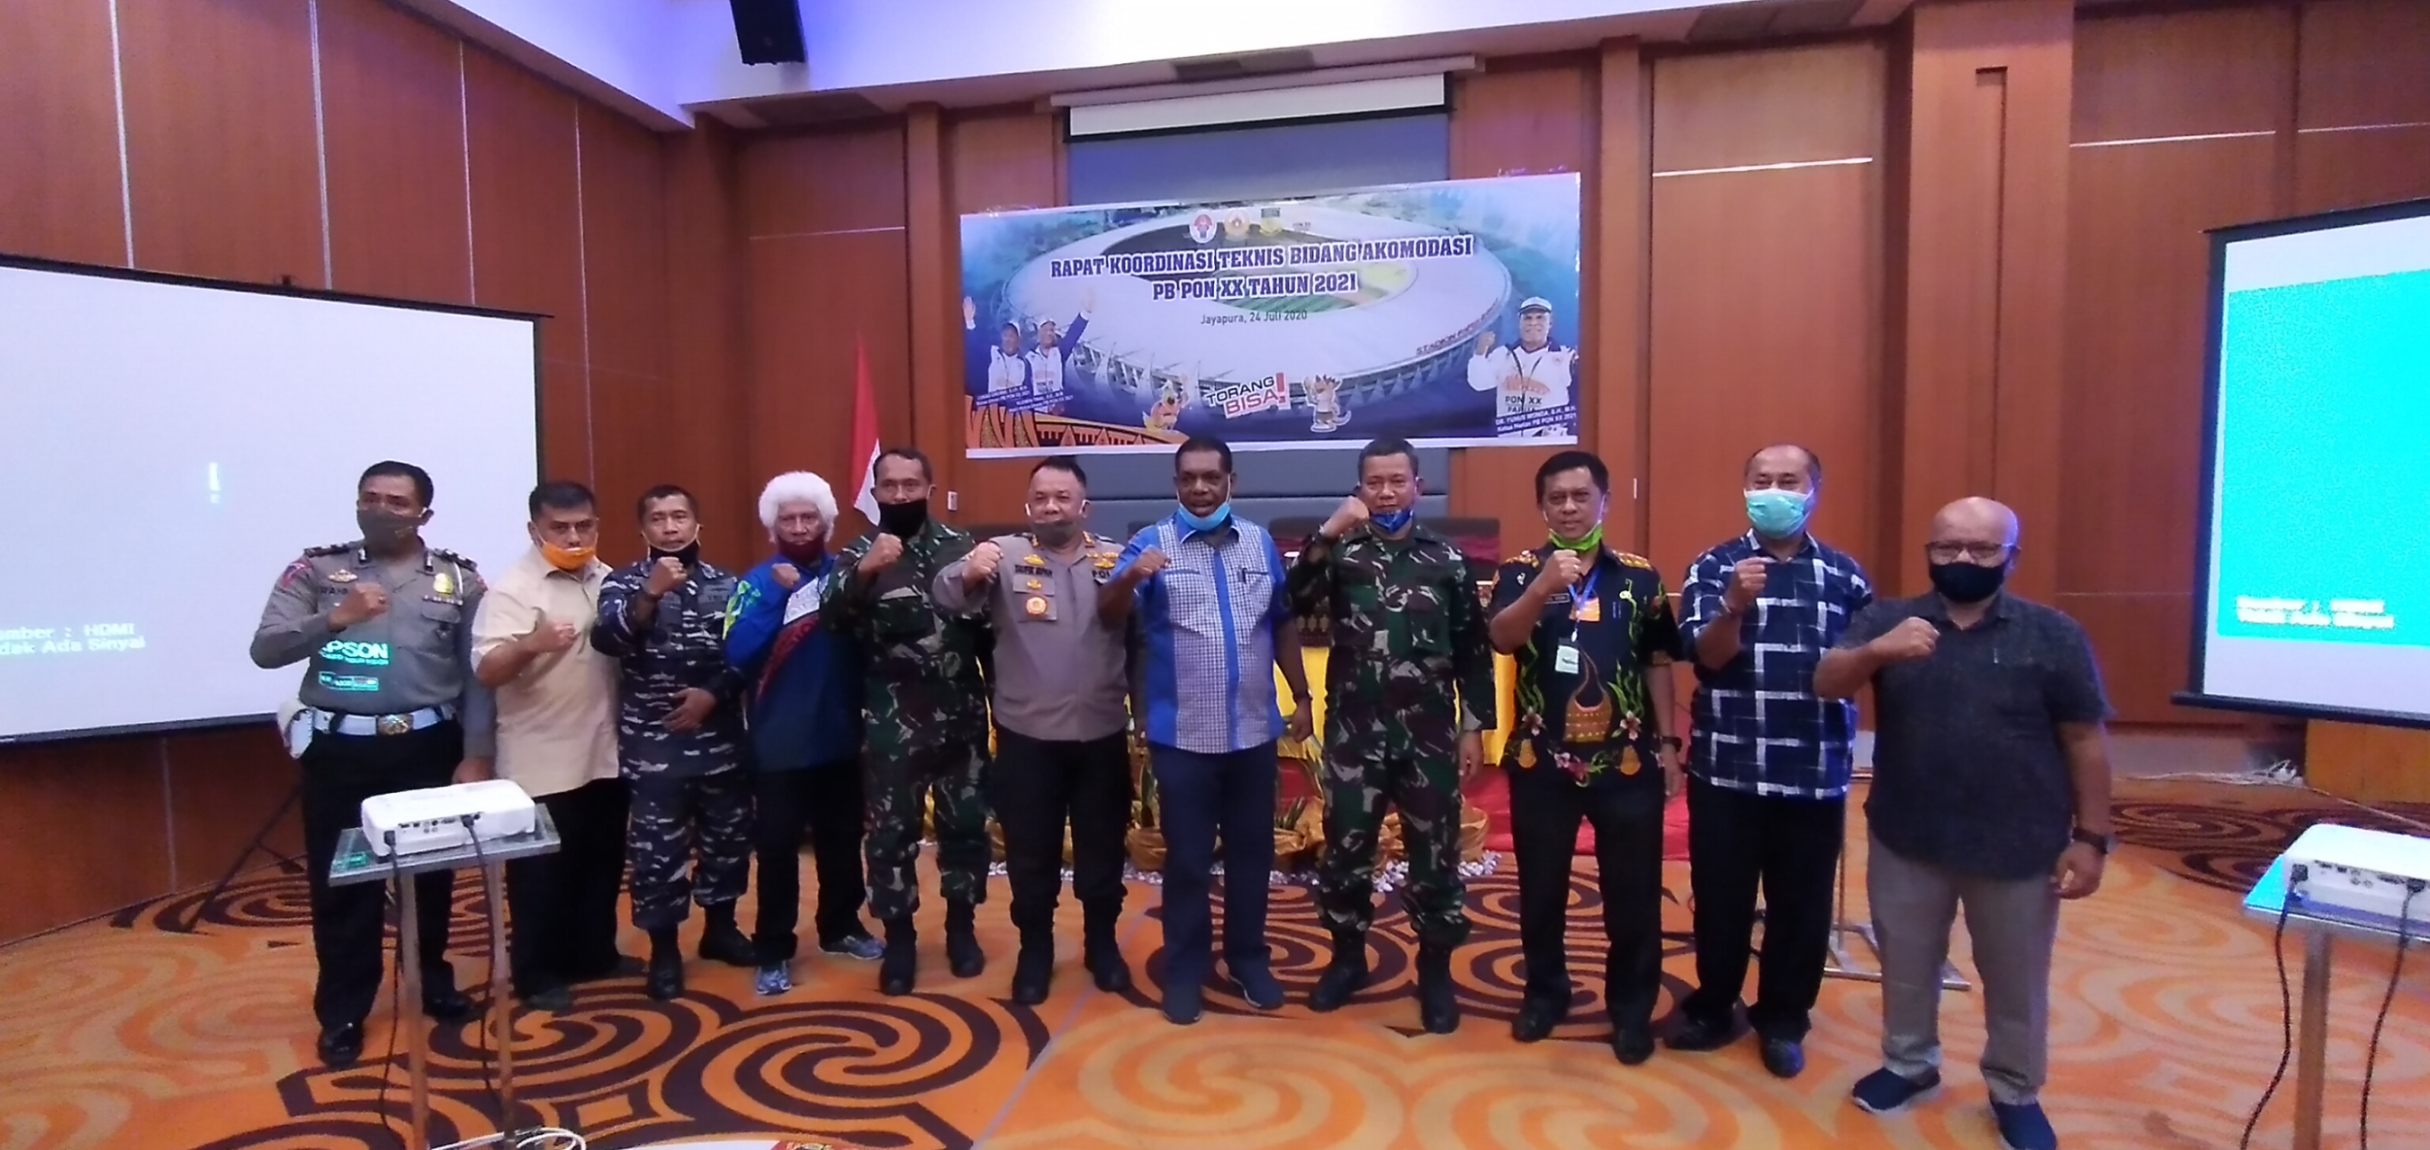 Peserta PON Papua Bakal Dapat Pelayanan Hotel Bintang Tiga